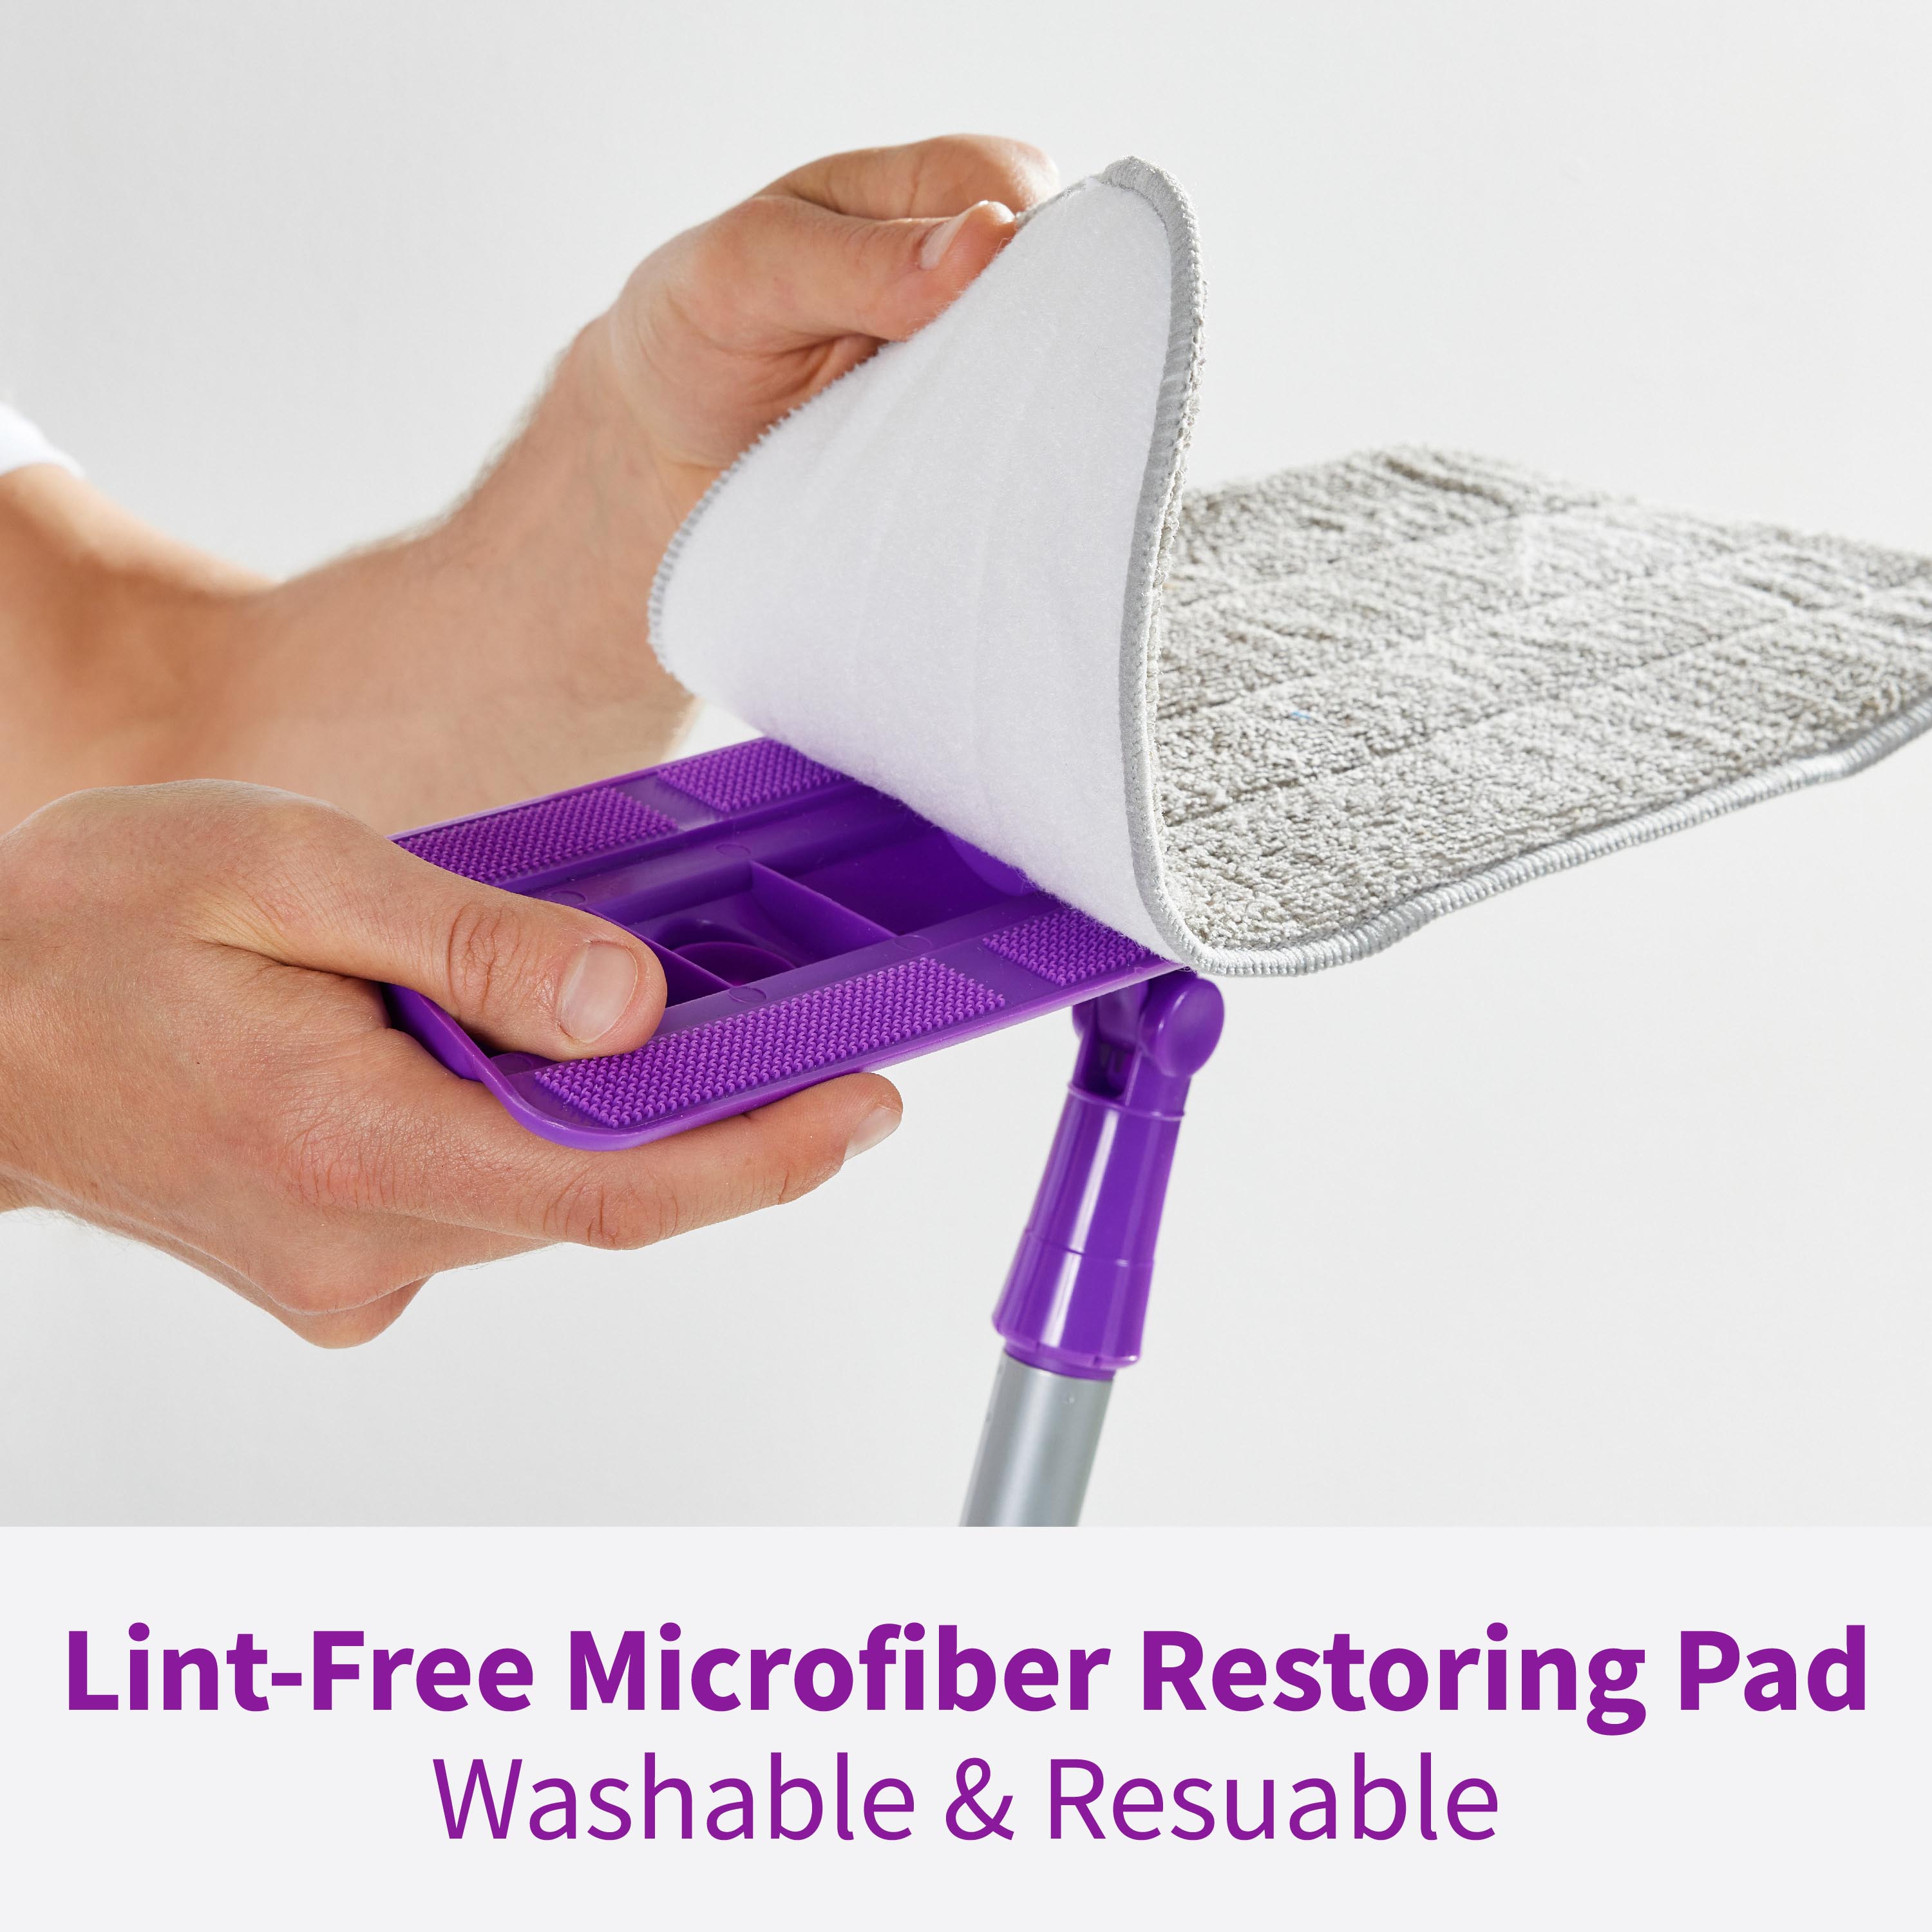 Microfiber restoring pad